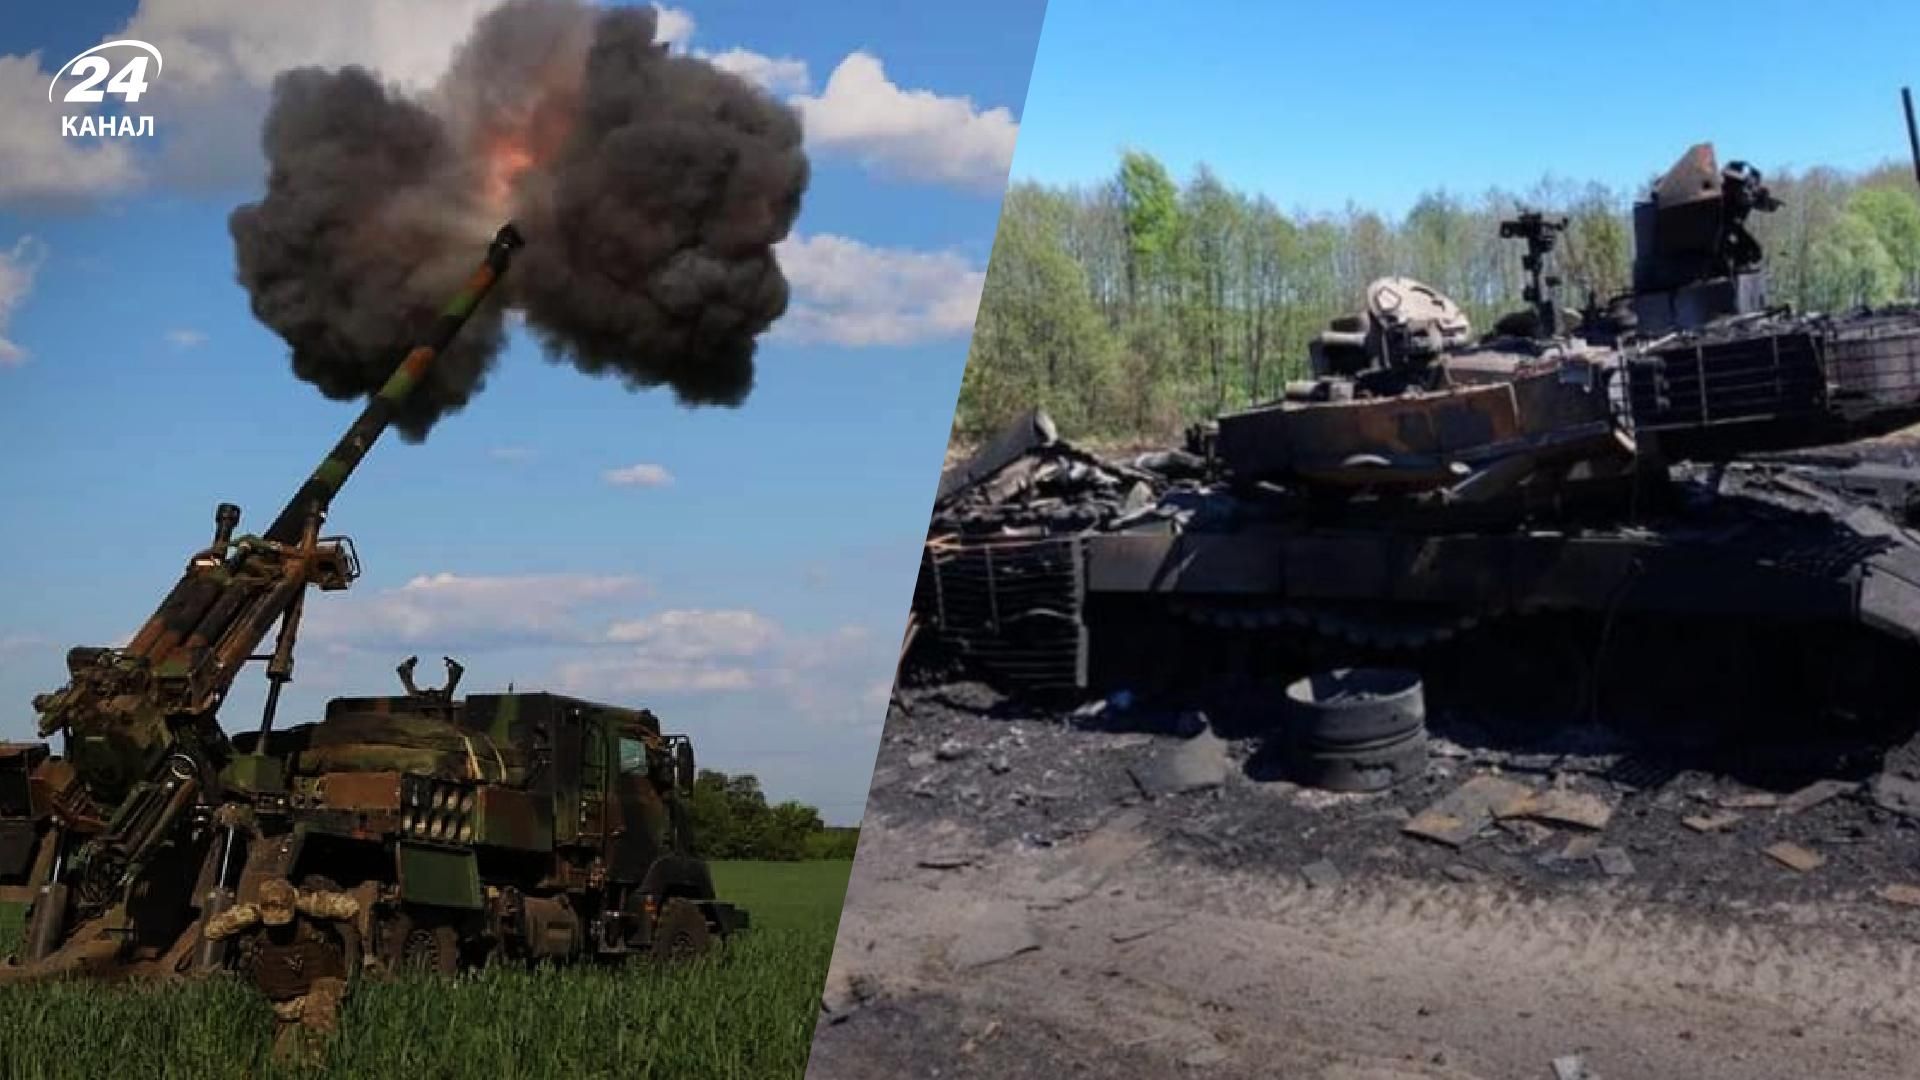 Потери России на войны - на Юге летчики уничтожили 35 кафиров, танки и броню - 24 Канал